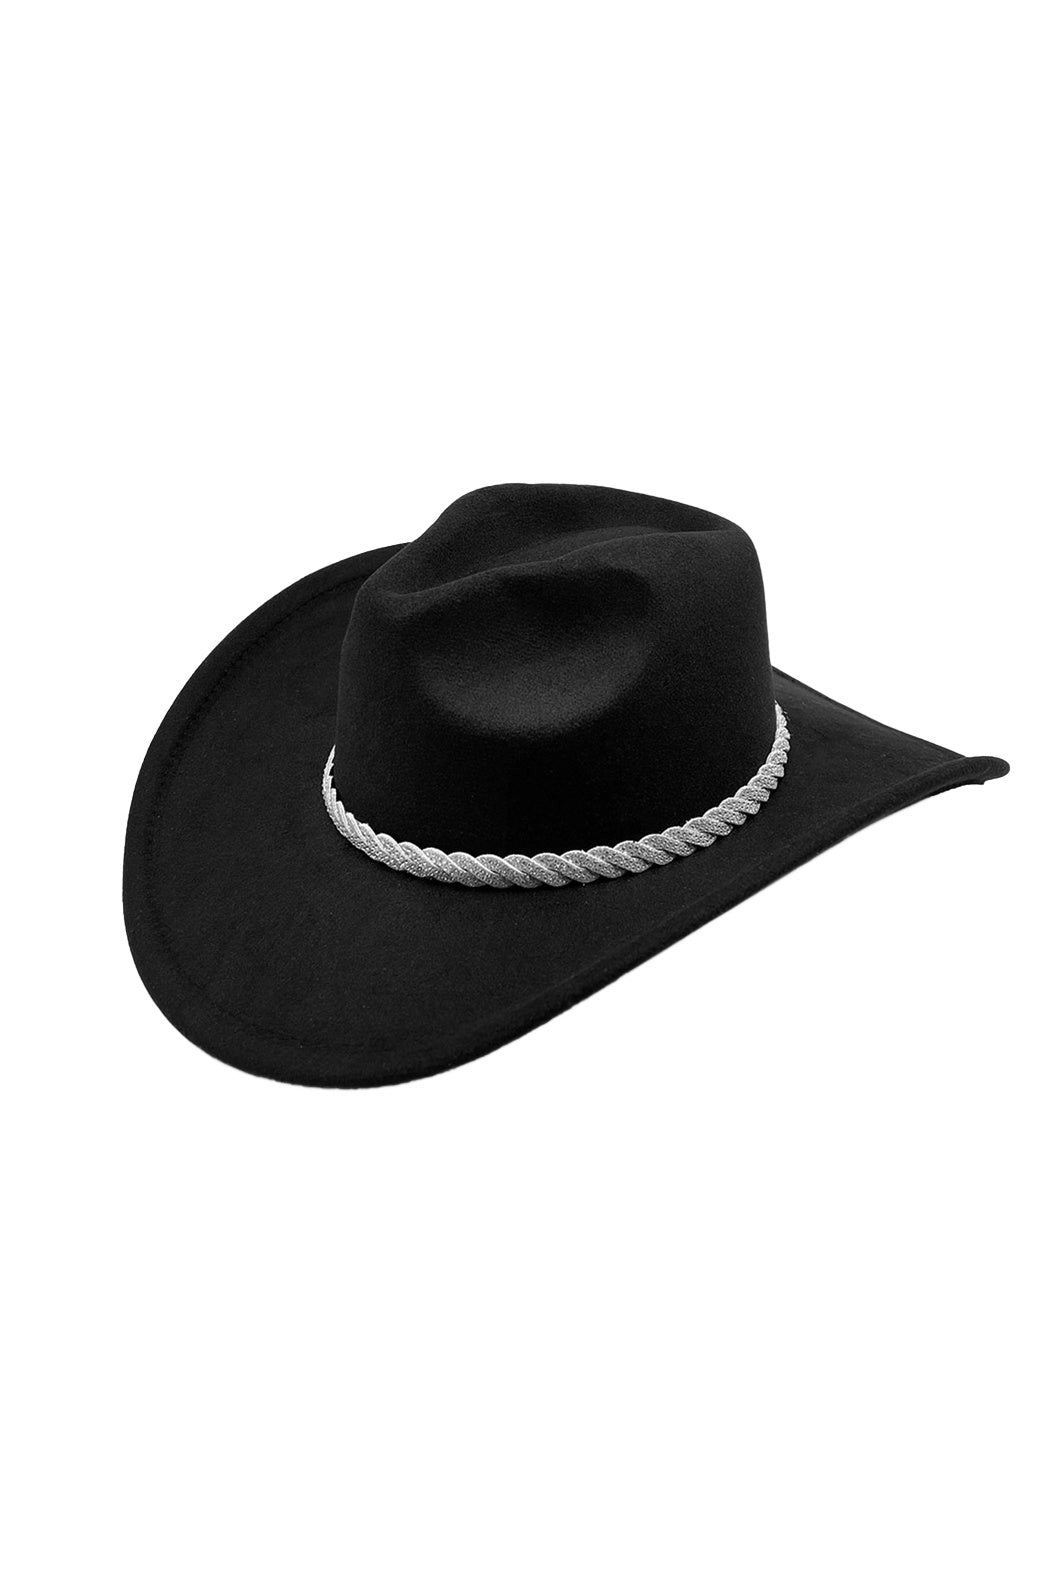 Twisted Crystal Cowboy Hat